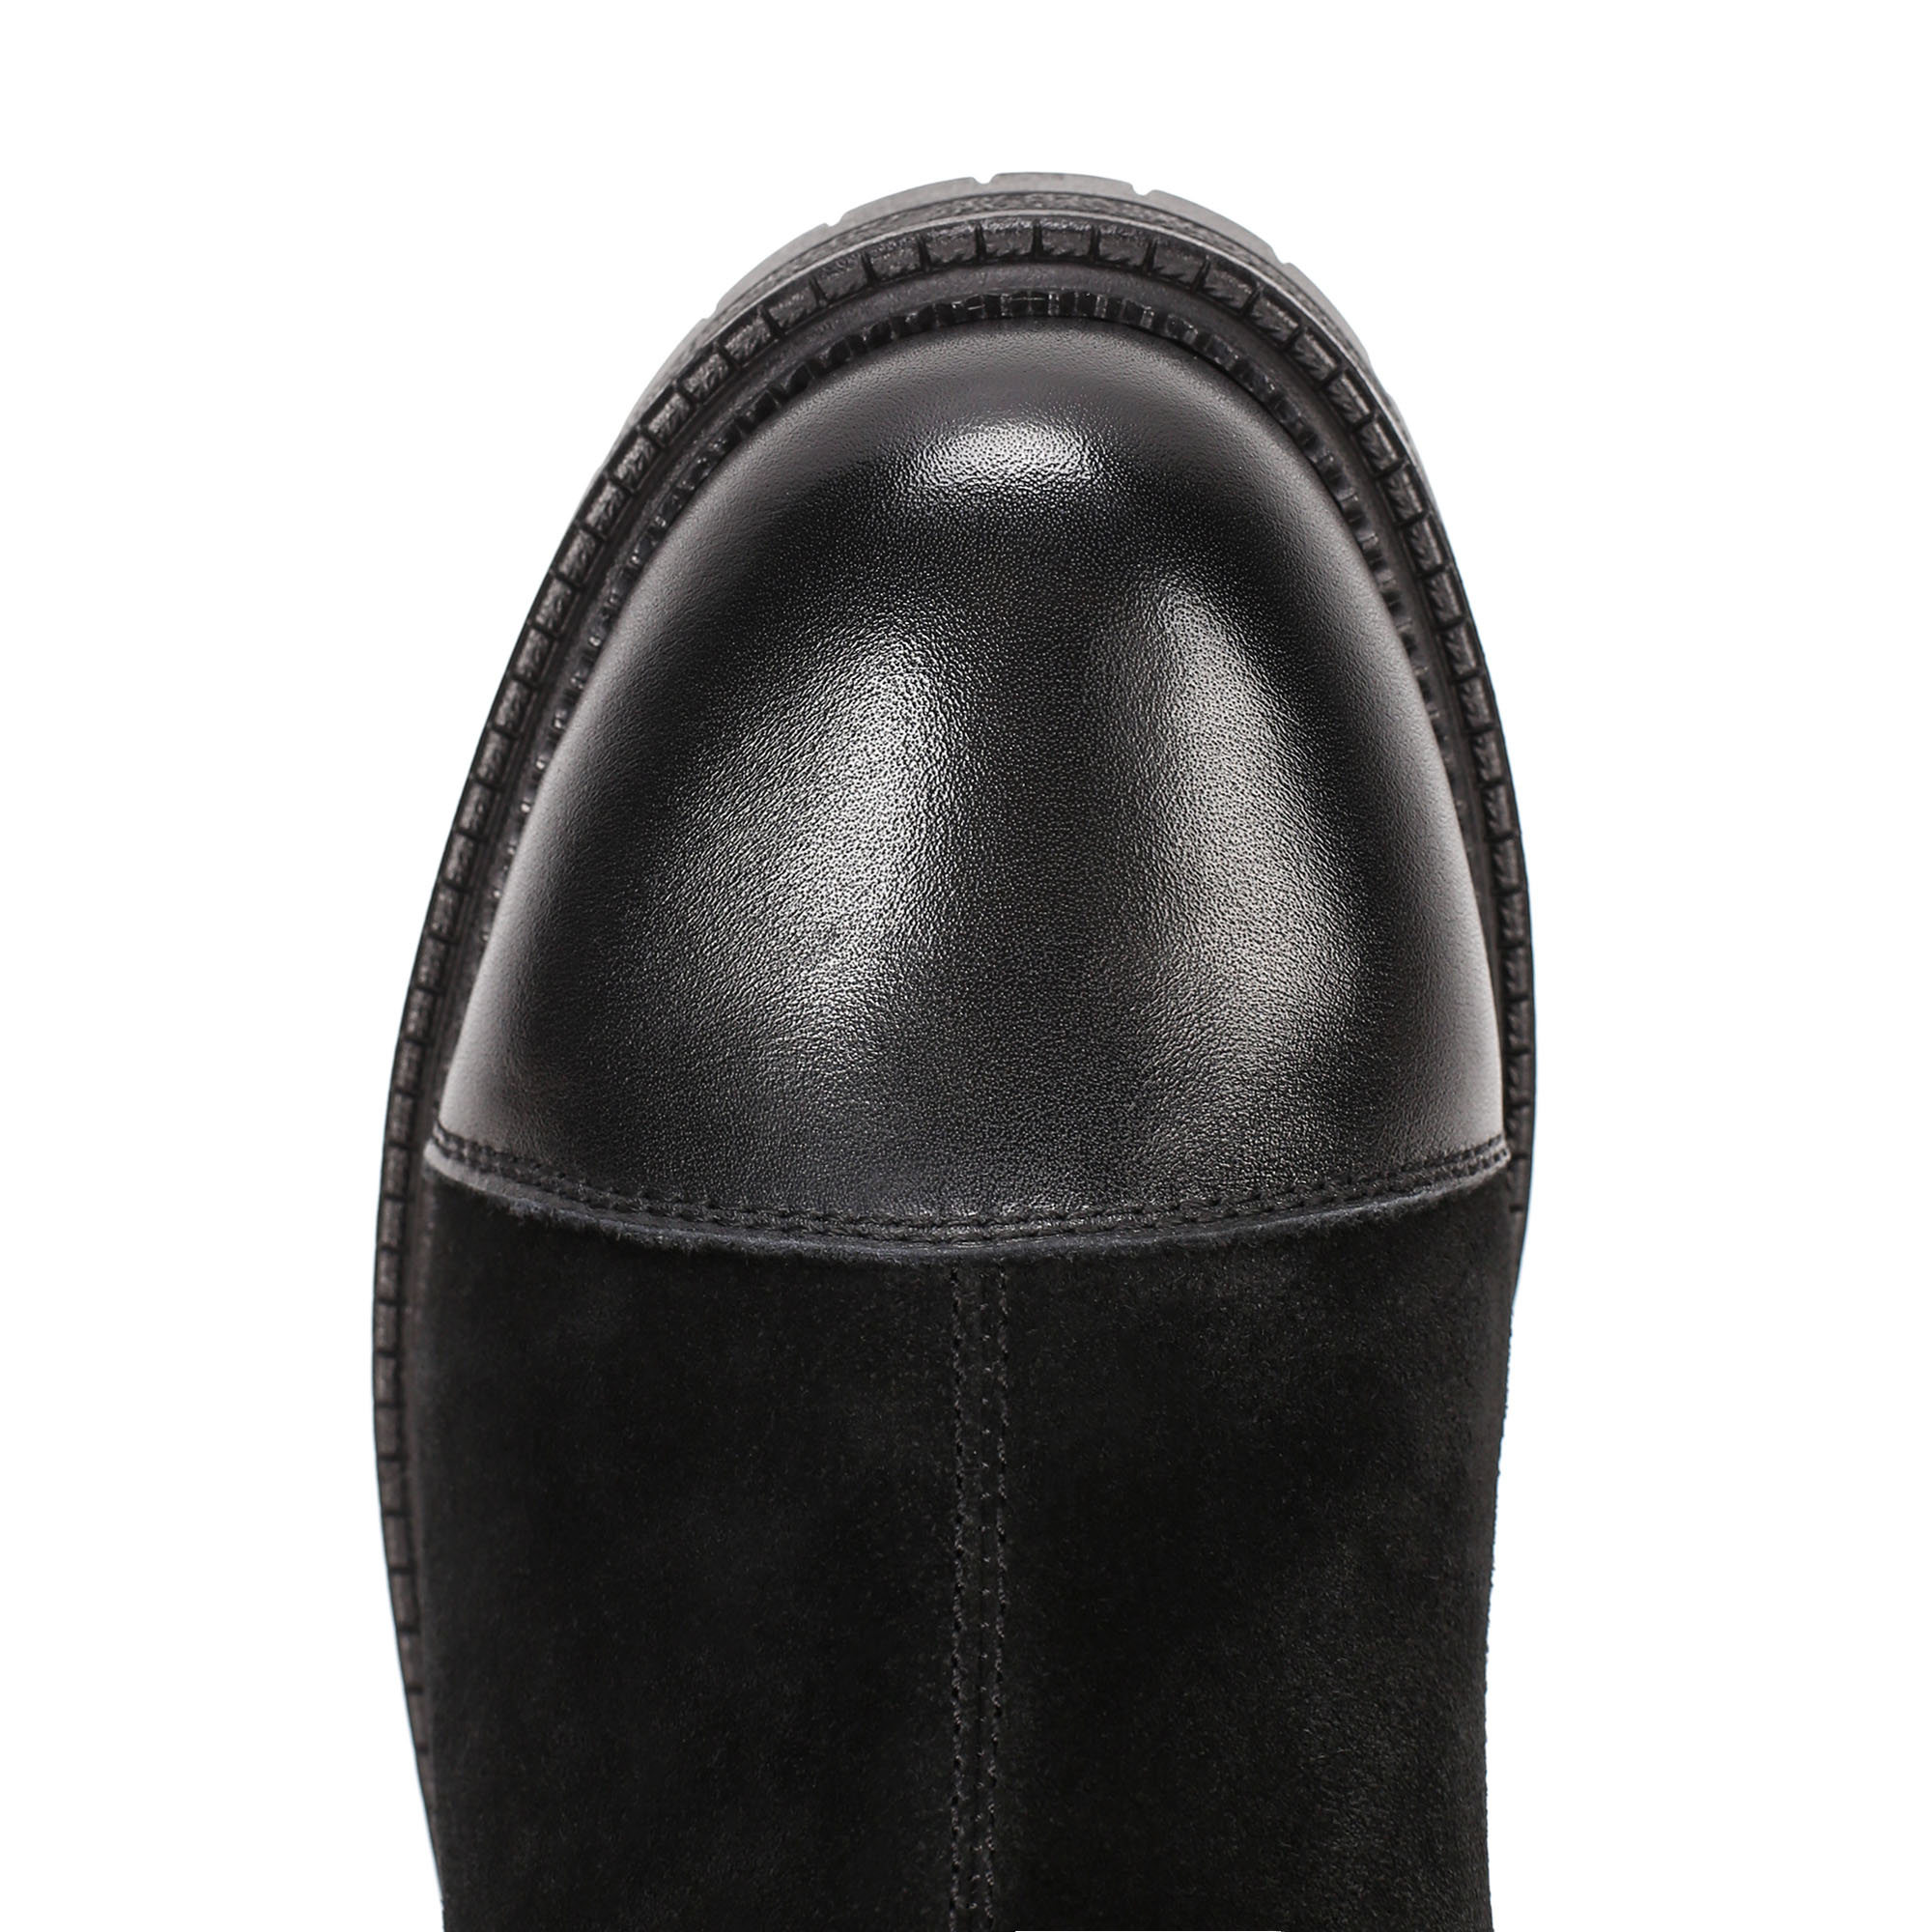 Ботинки Thomas Munz 078-163A-30202, цвет черный, размер 39 - фото 5